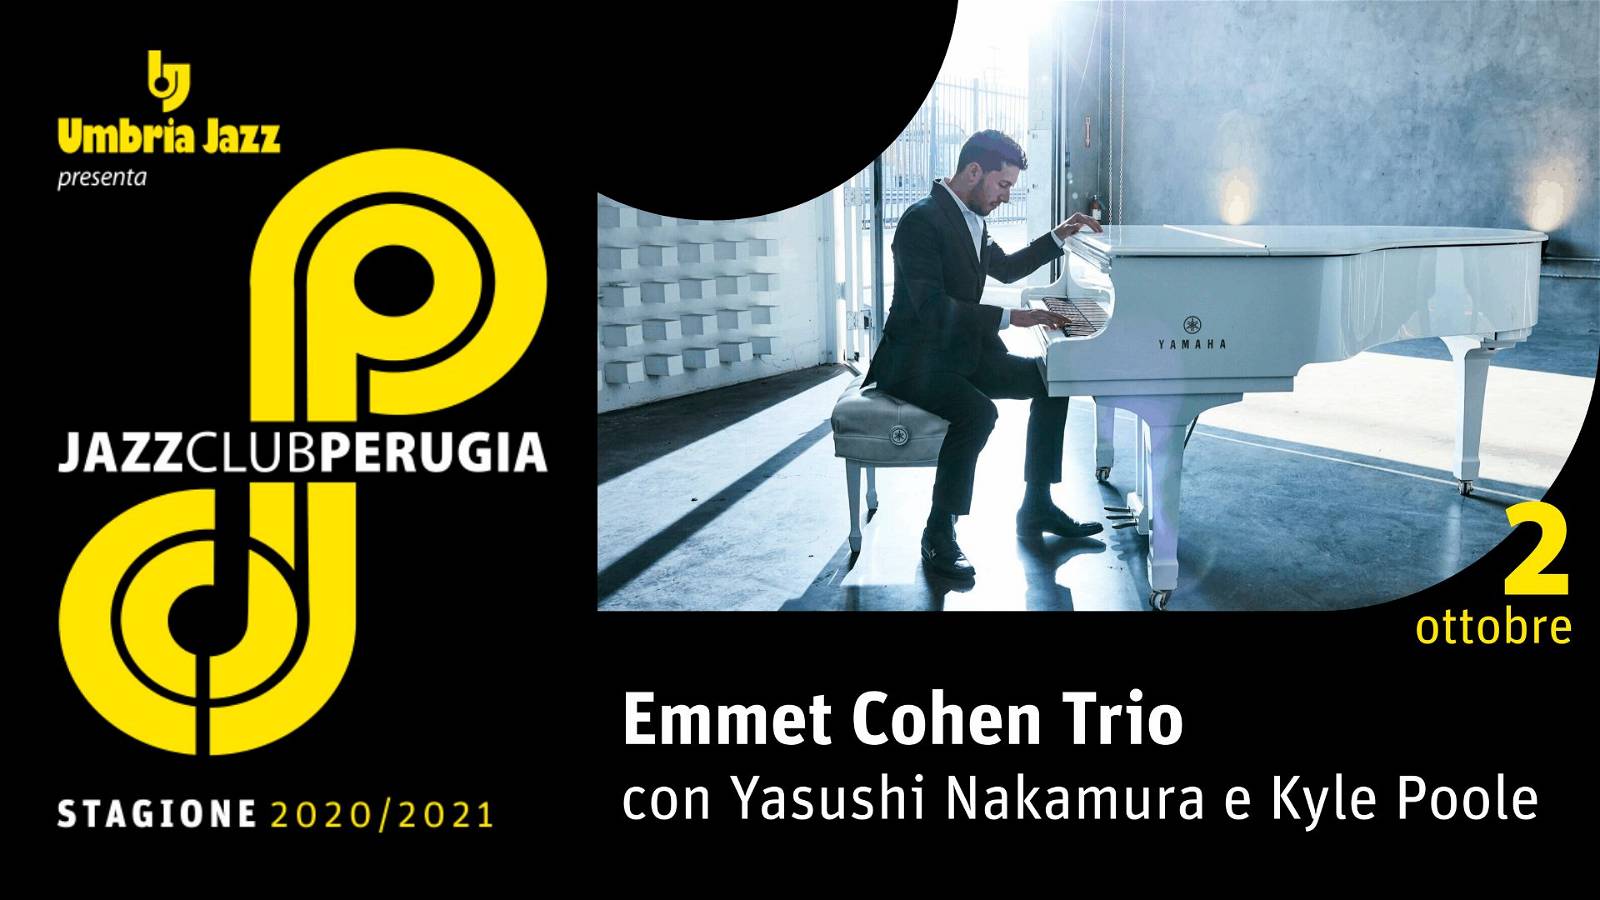 Umbria Jazz presenta Emmet Cohen Trio